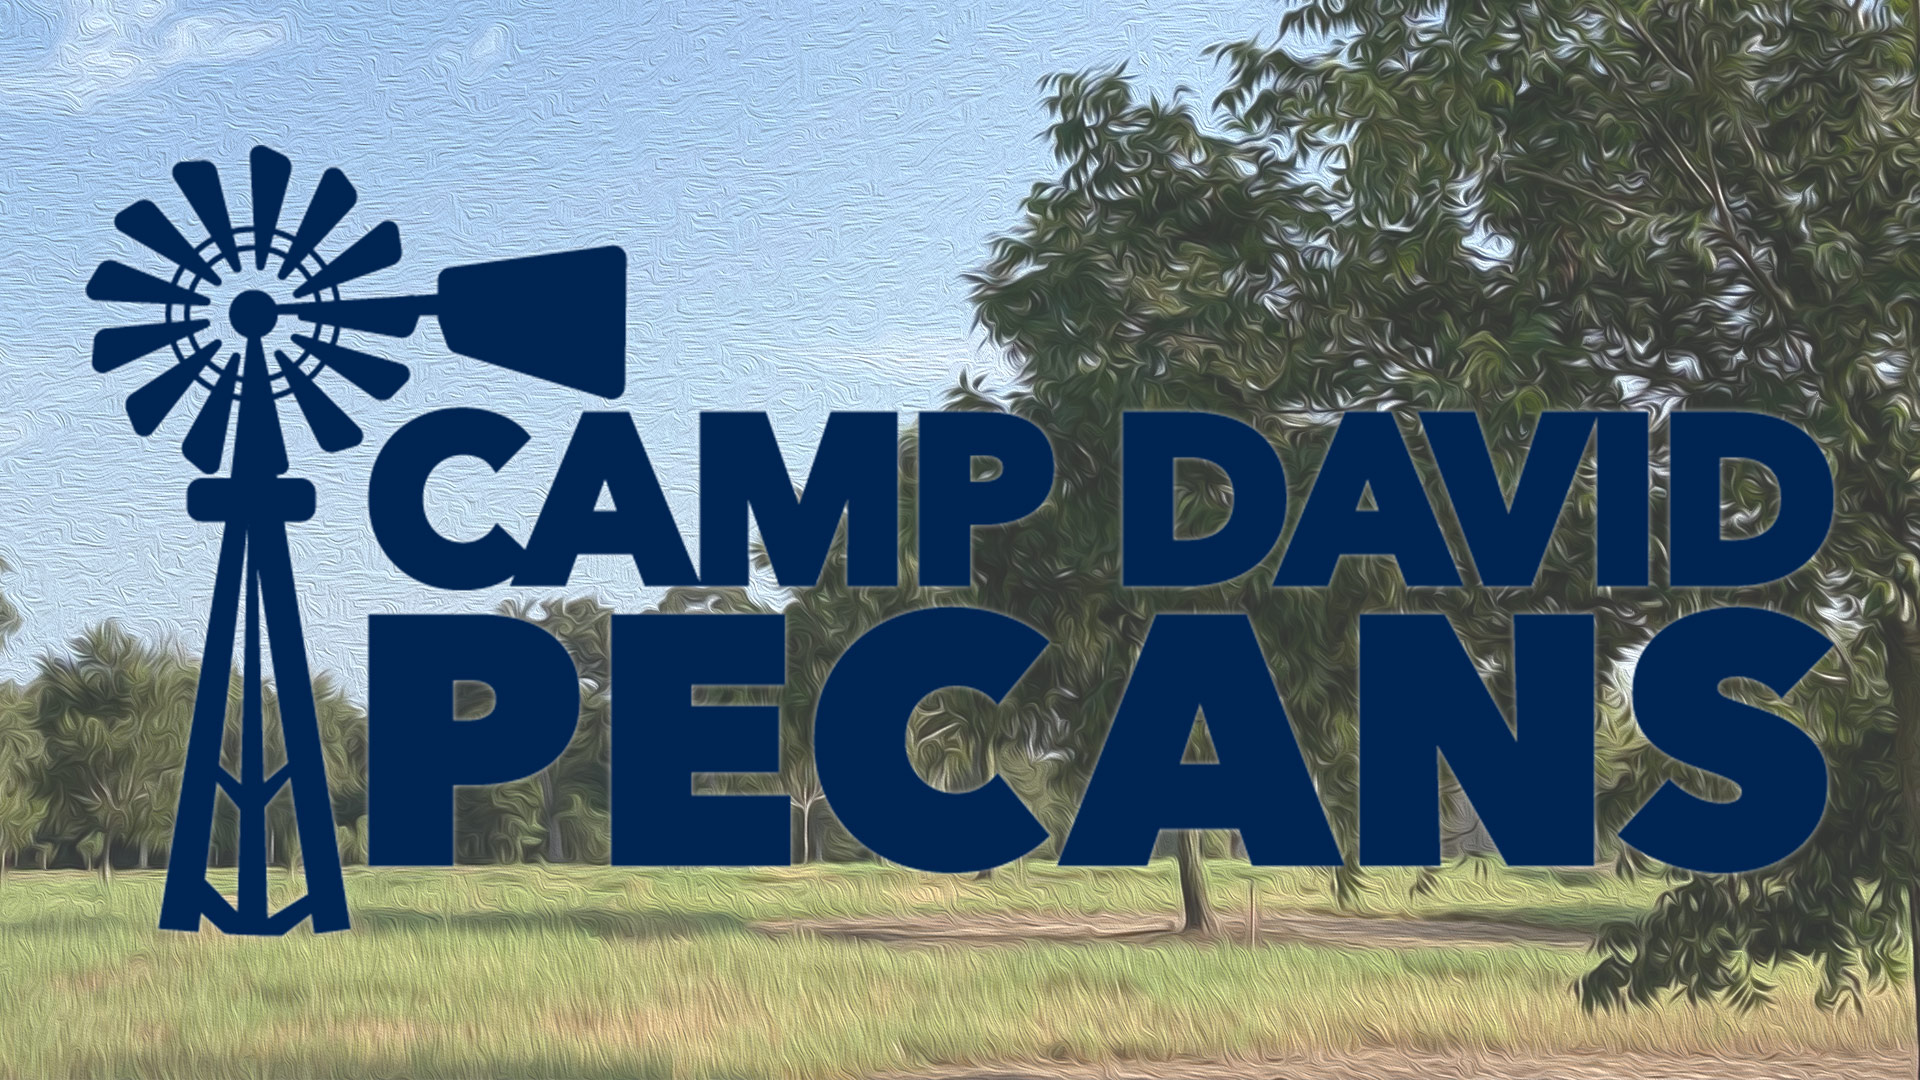 Camp David Pecans Logo